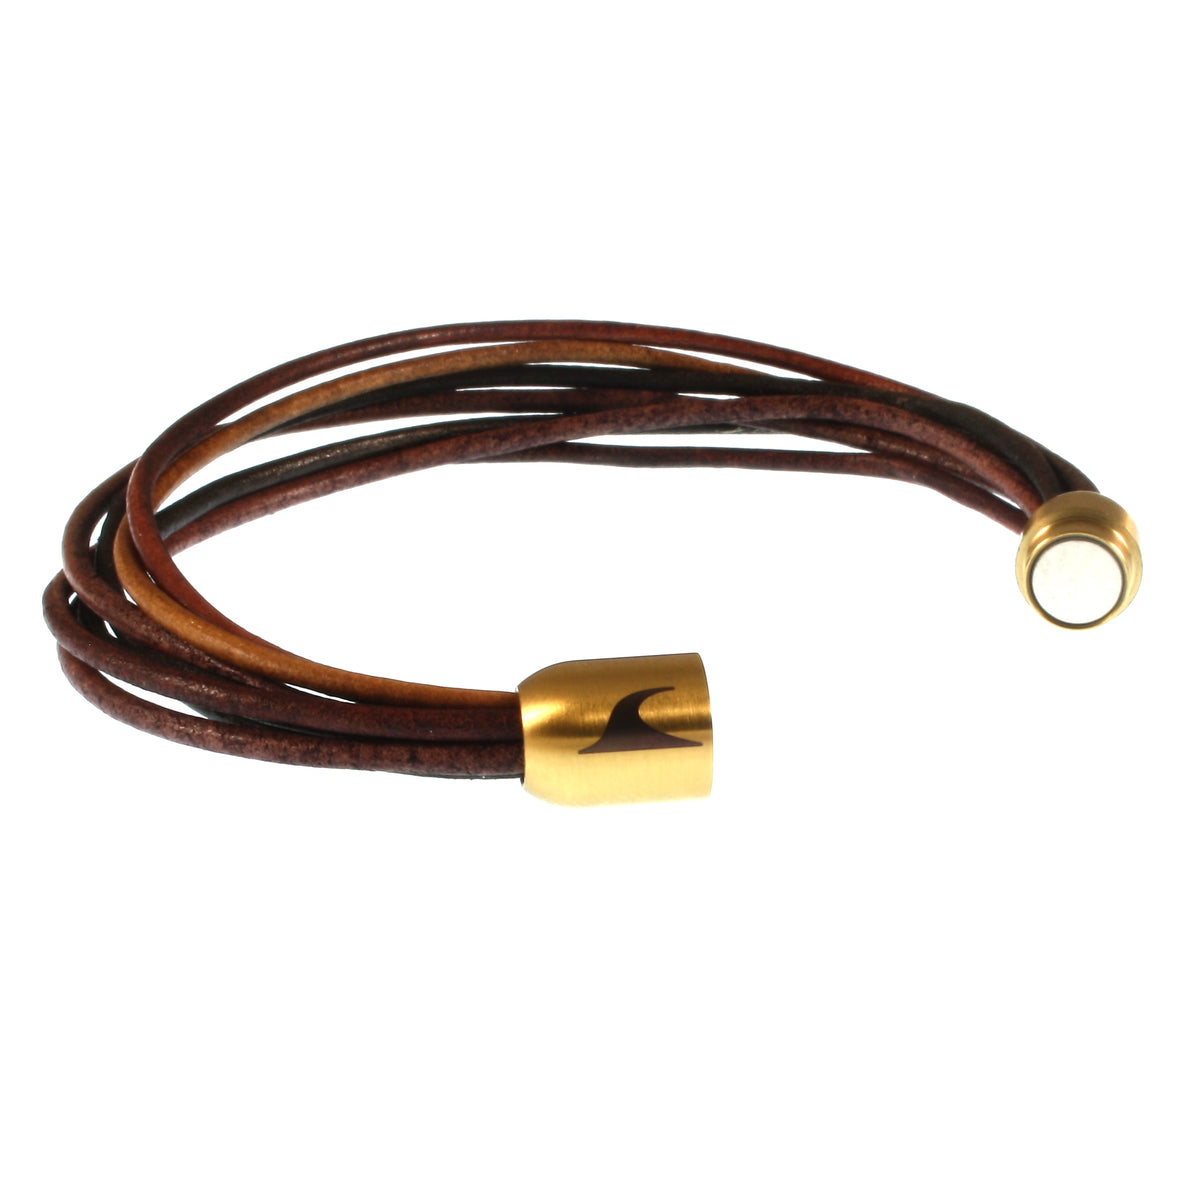 Damen-Leder-armband-fem-wood-gold-Edelstahlverschluss-offen-wavepirate-shop-r